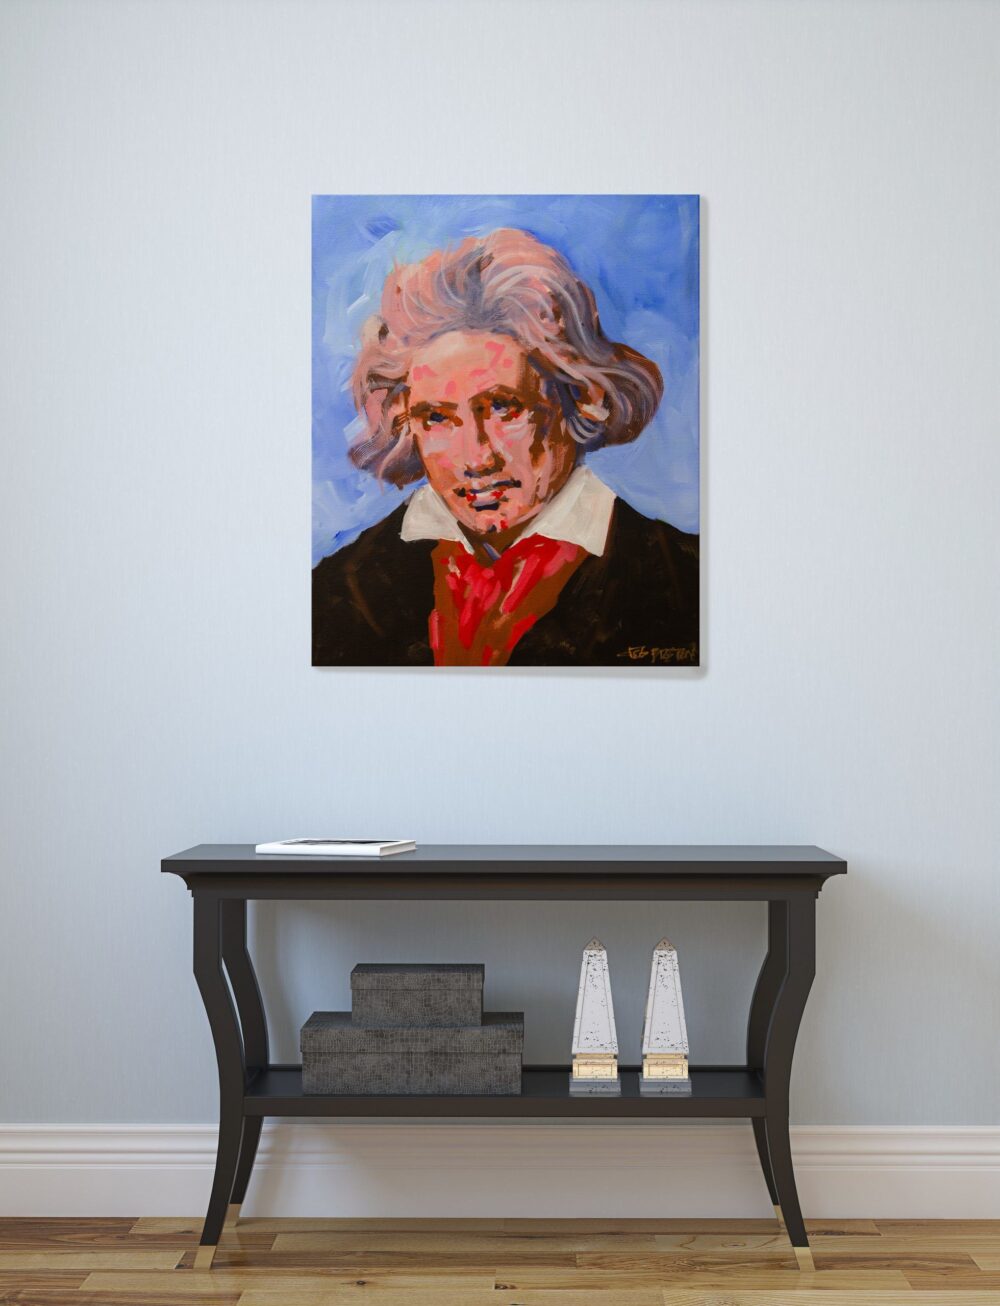 Ludwig Van Beethoven painting in foyer